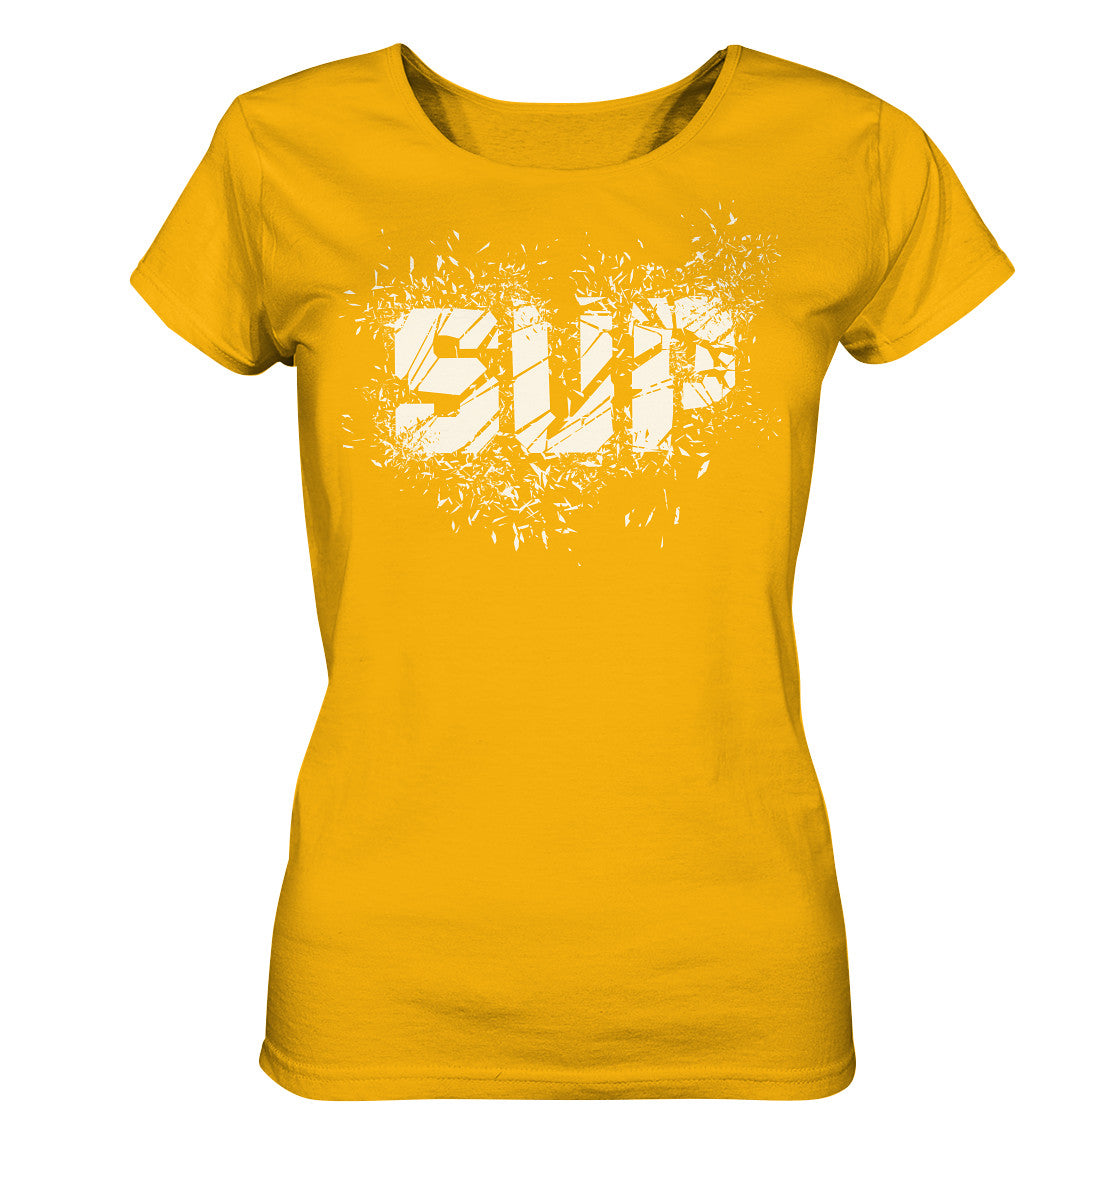 Bursting SUP - Ladies Organic Shirt